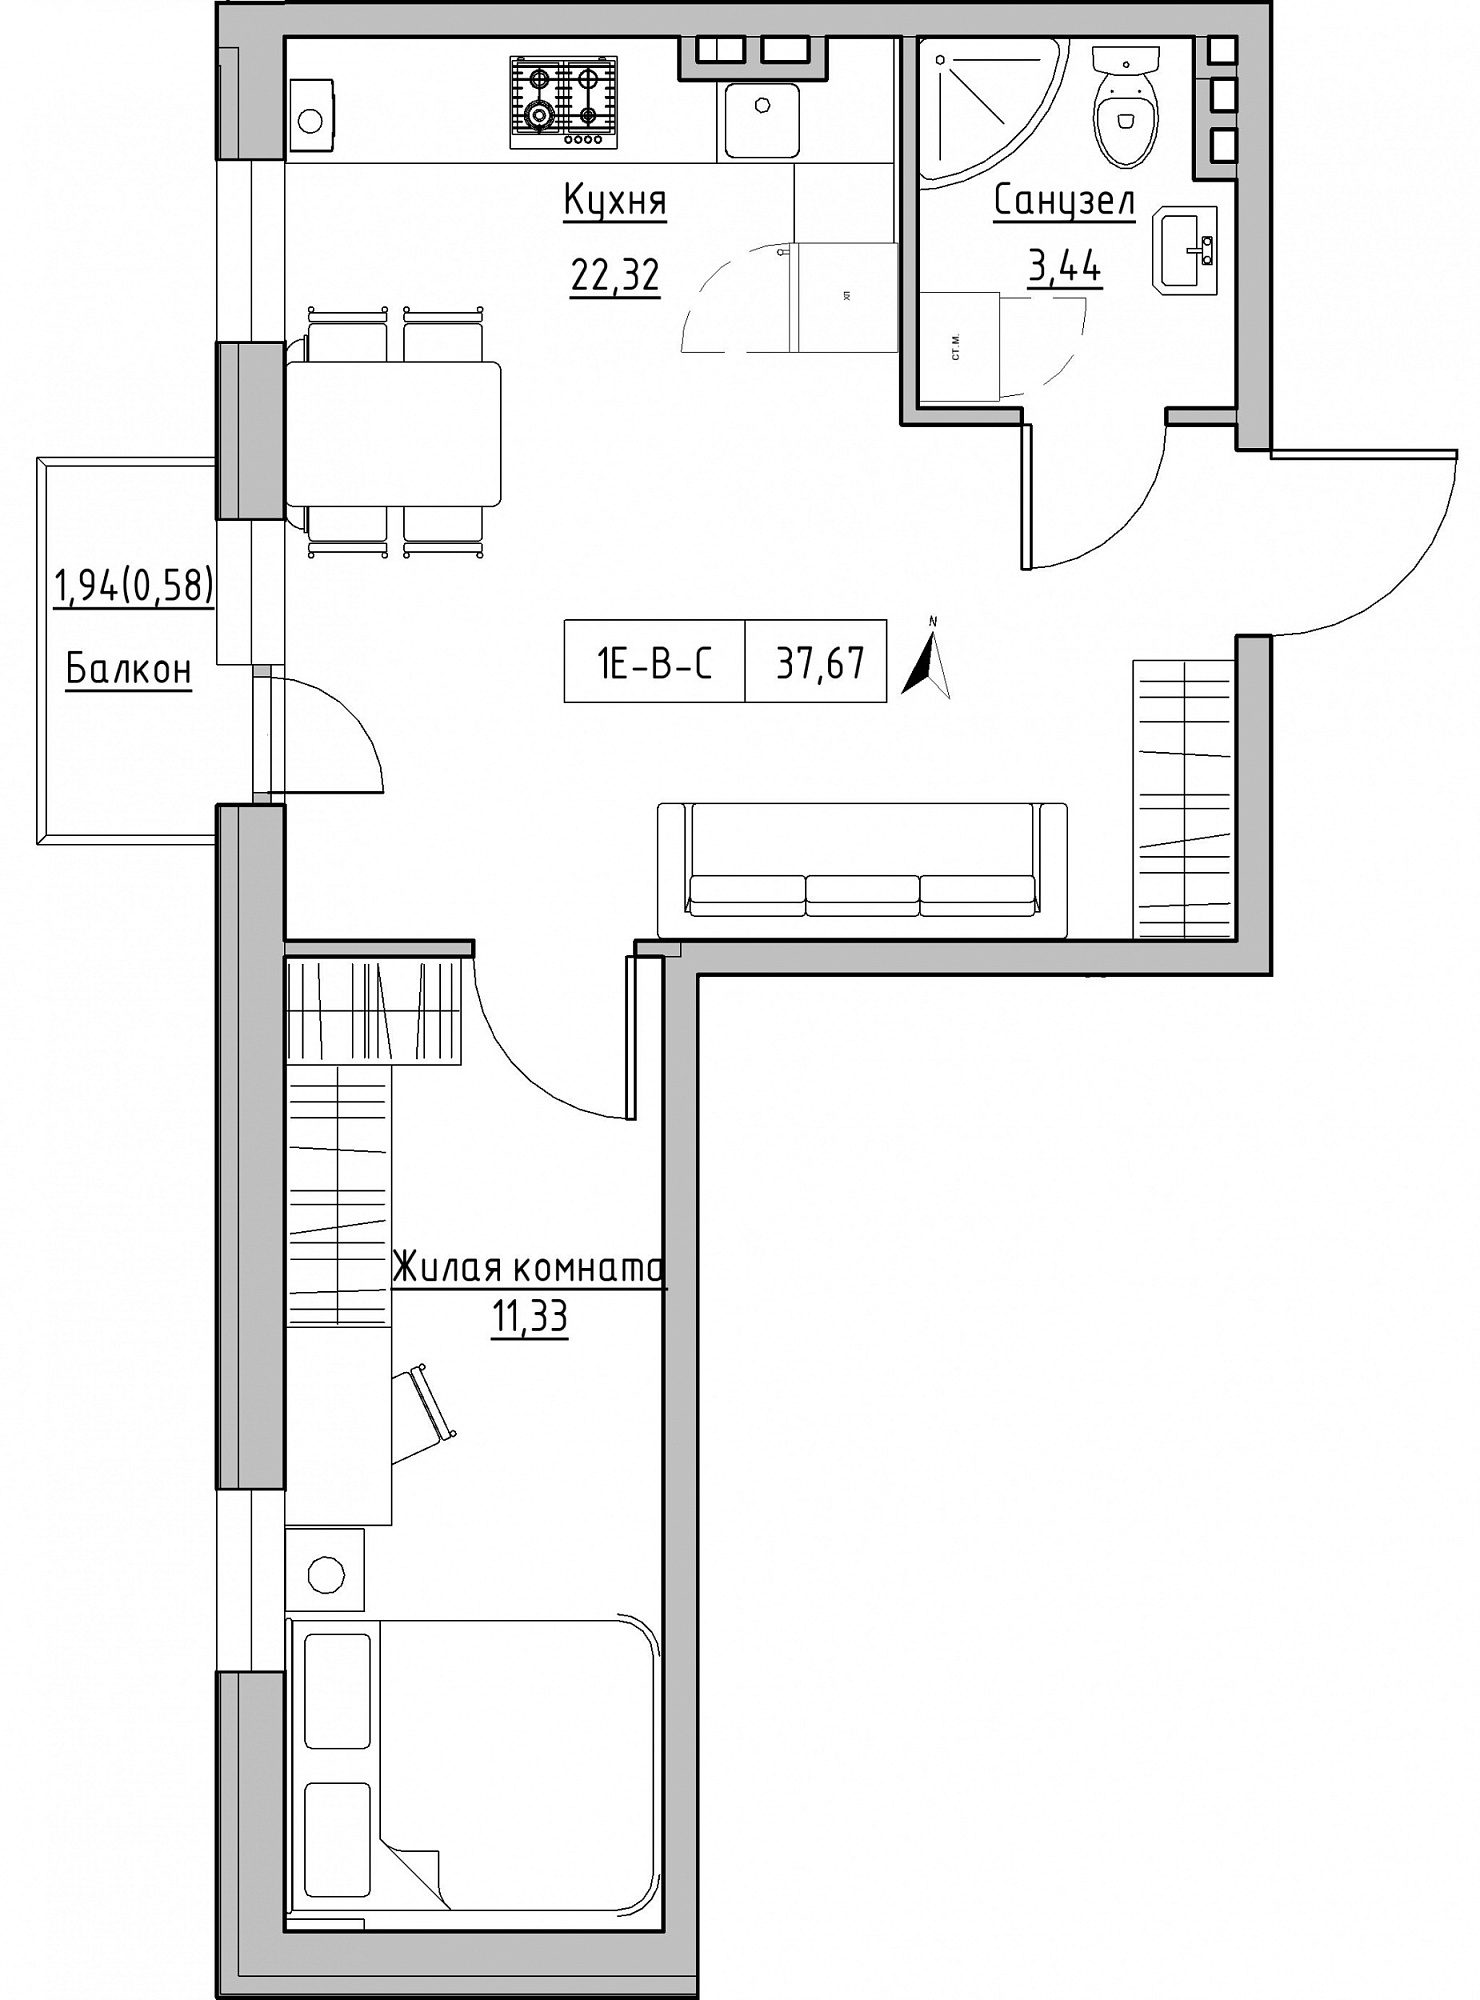 Планировка 1-к квартира площей 37.67м2, KS-024-02/0009.